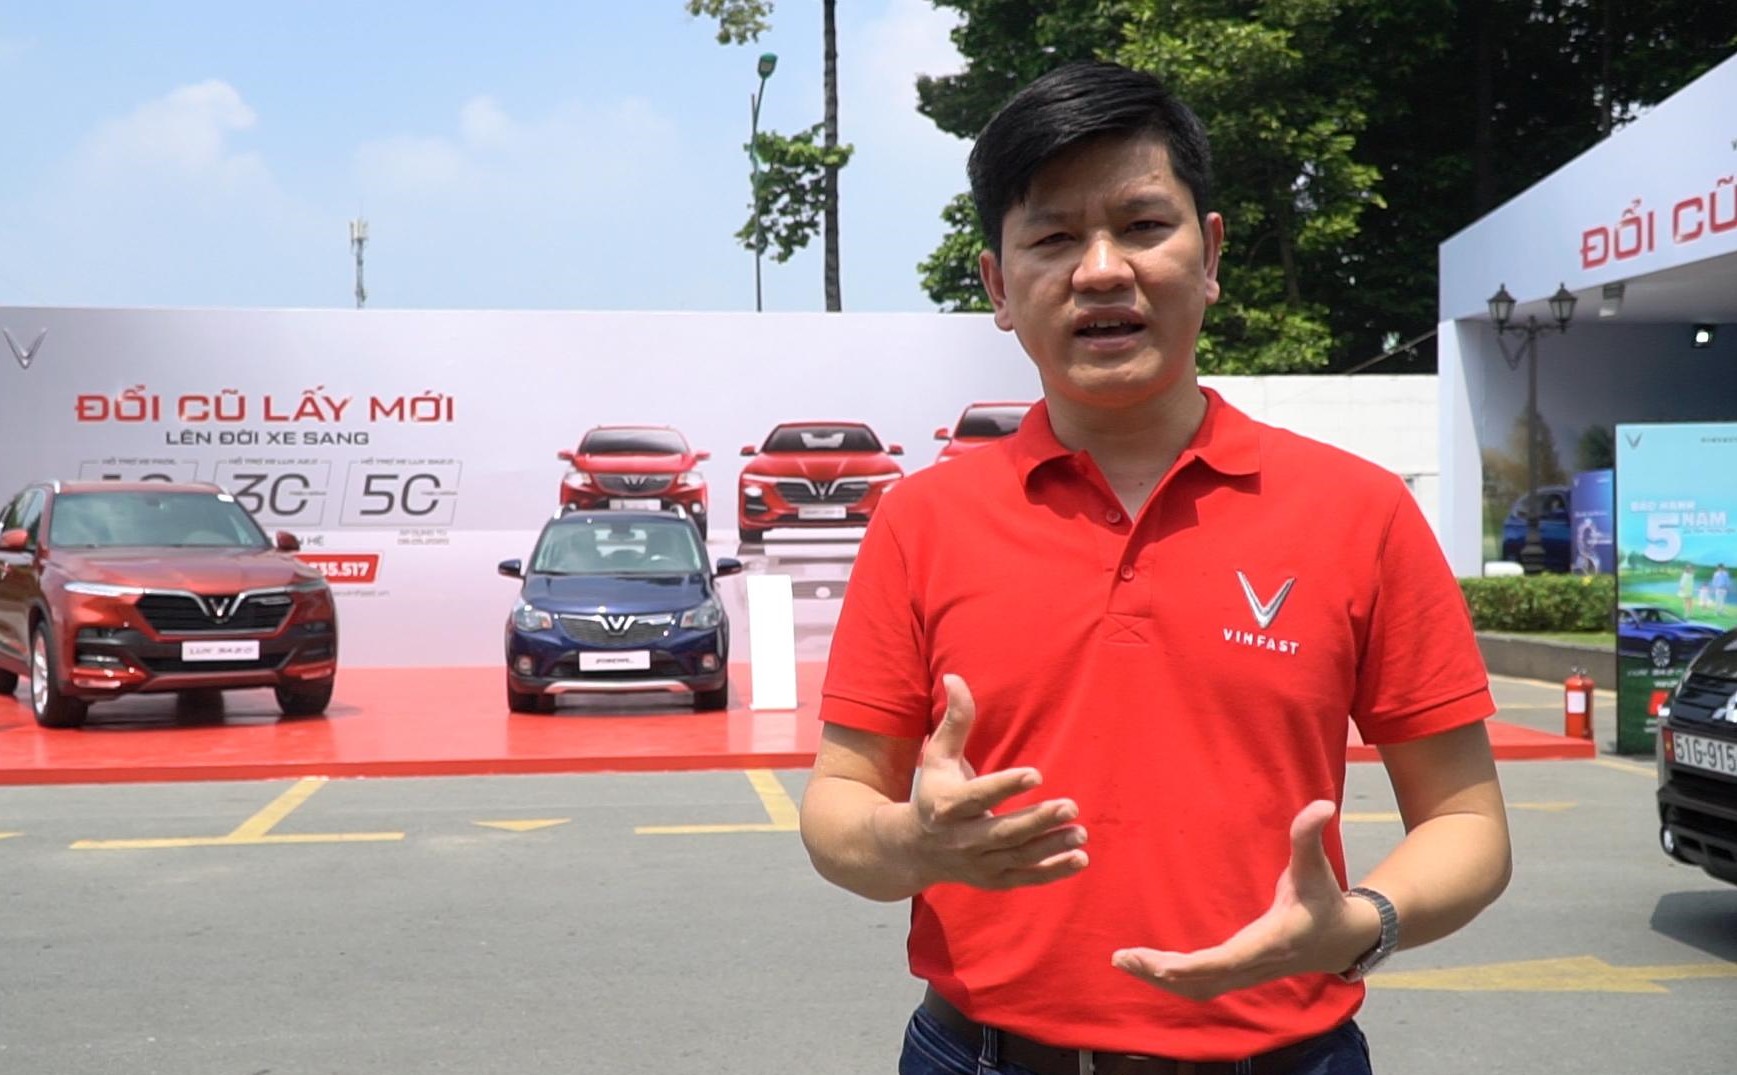 Đi siêu thị ô tô cũ lớn nhất Việt Nam sắm xe VinFast như thế nào  Autodailyvn  YouTube